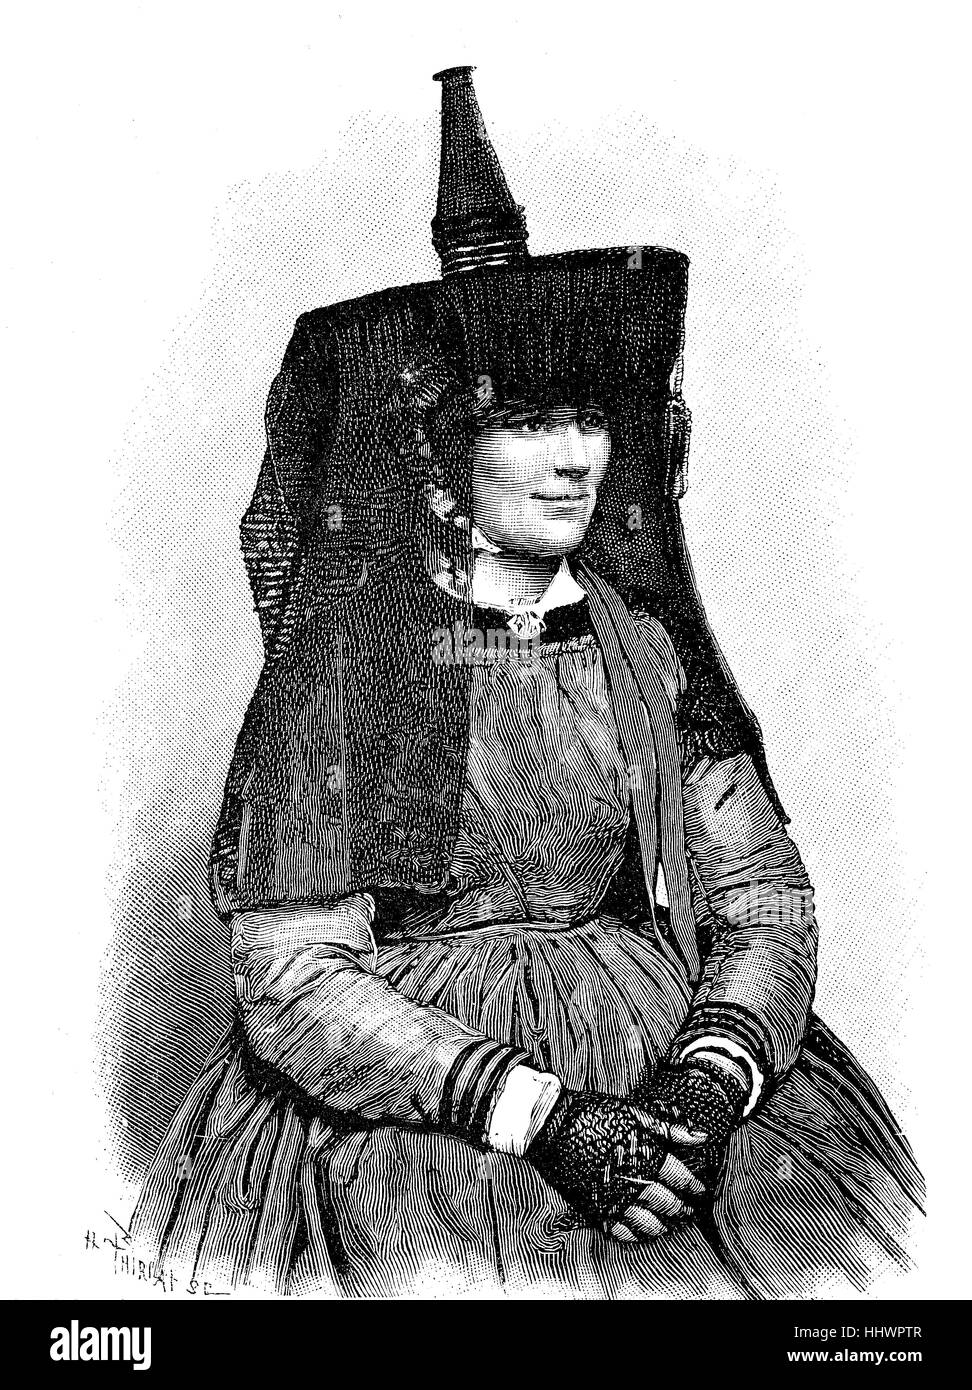 Le folklore français, le Costume de la femme paysanne de Bresse, image historique ou illustration, publié 1890, l'amélioration numérique Banque D'Images